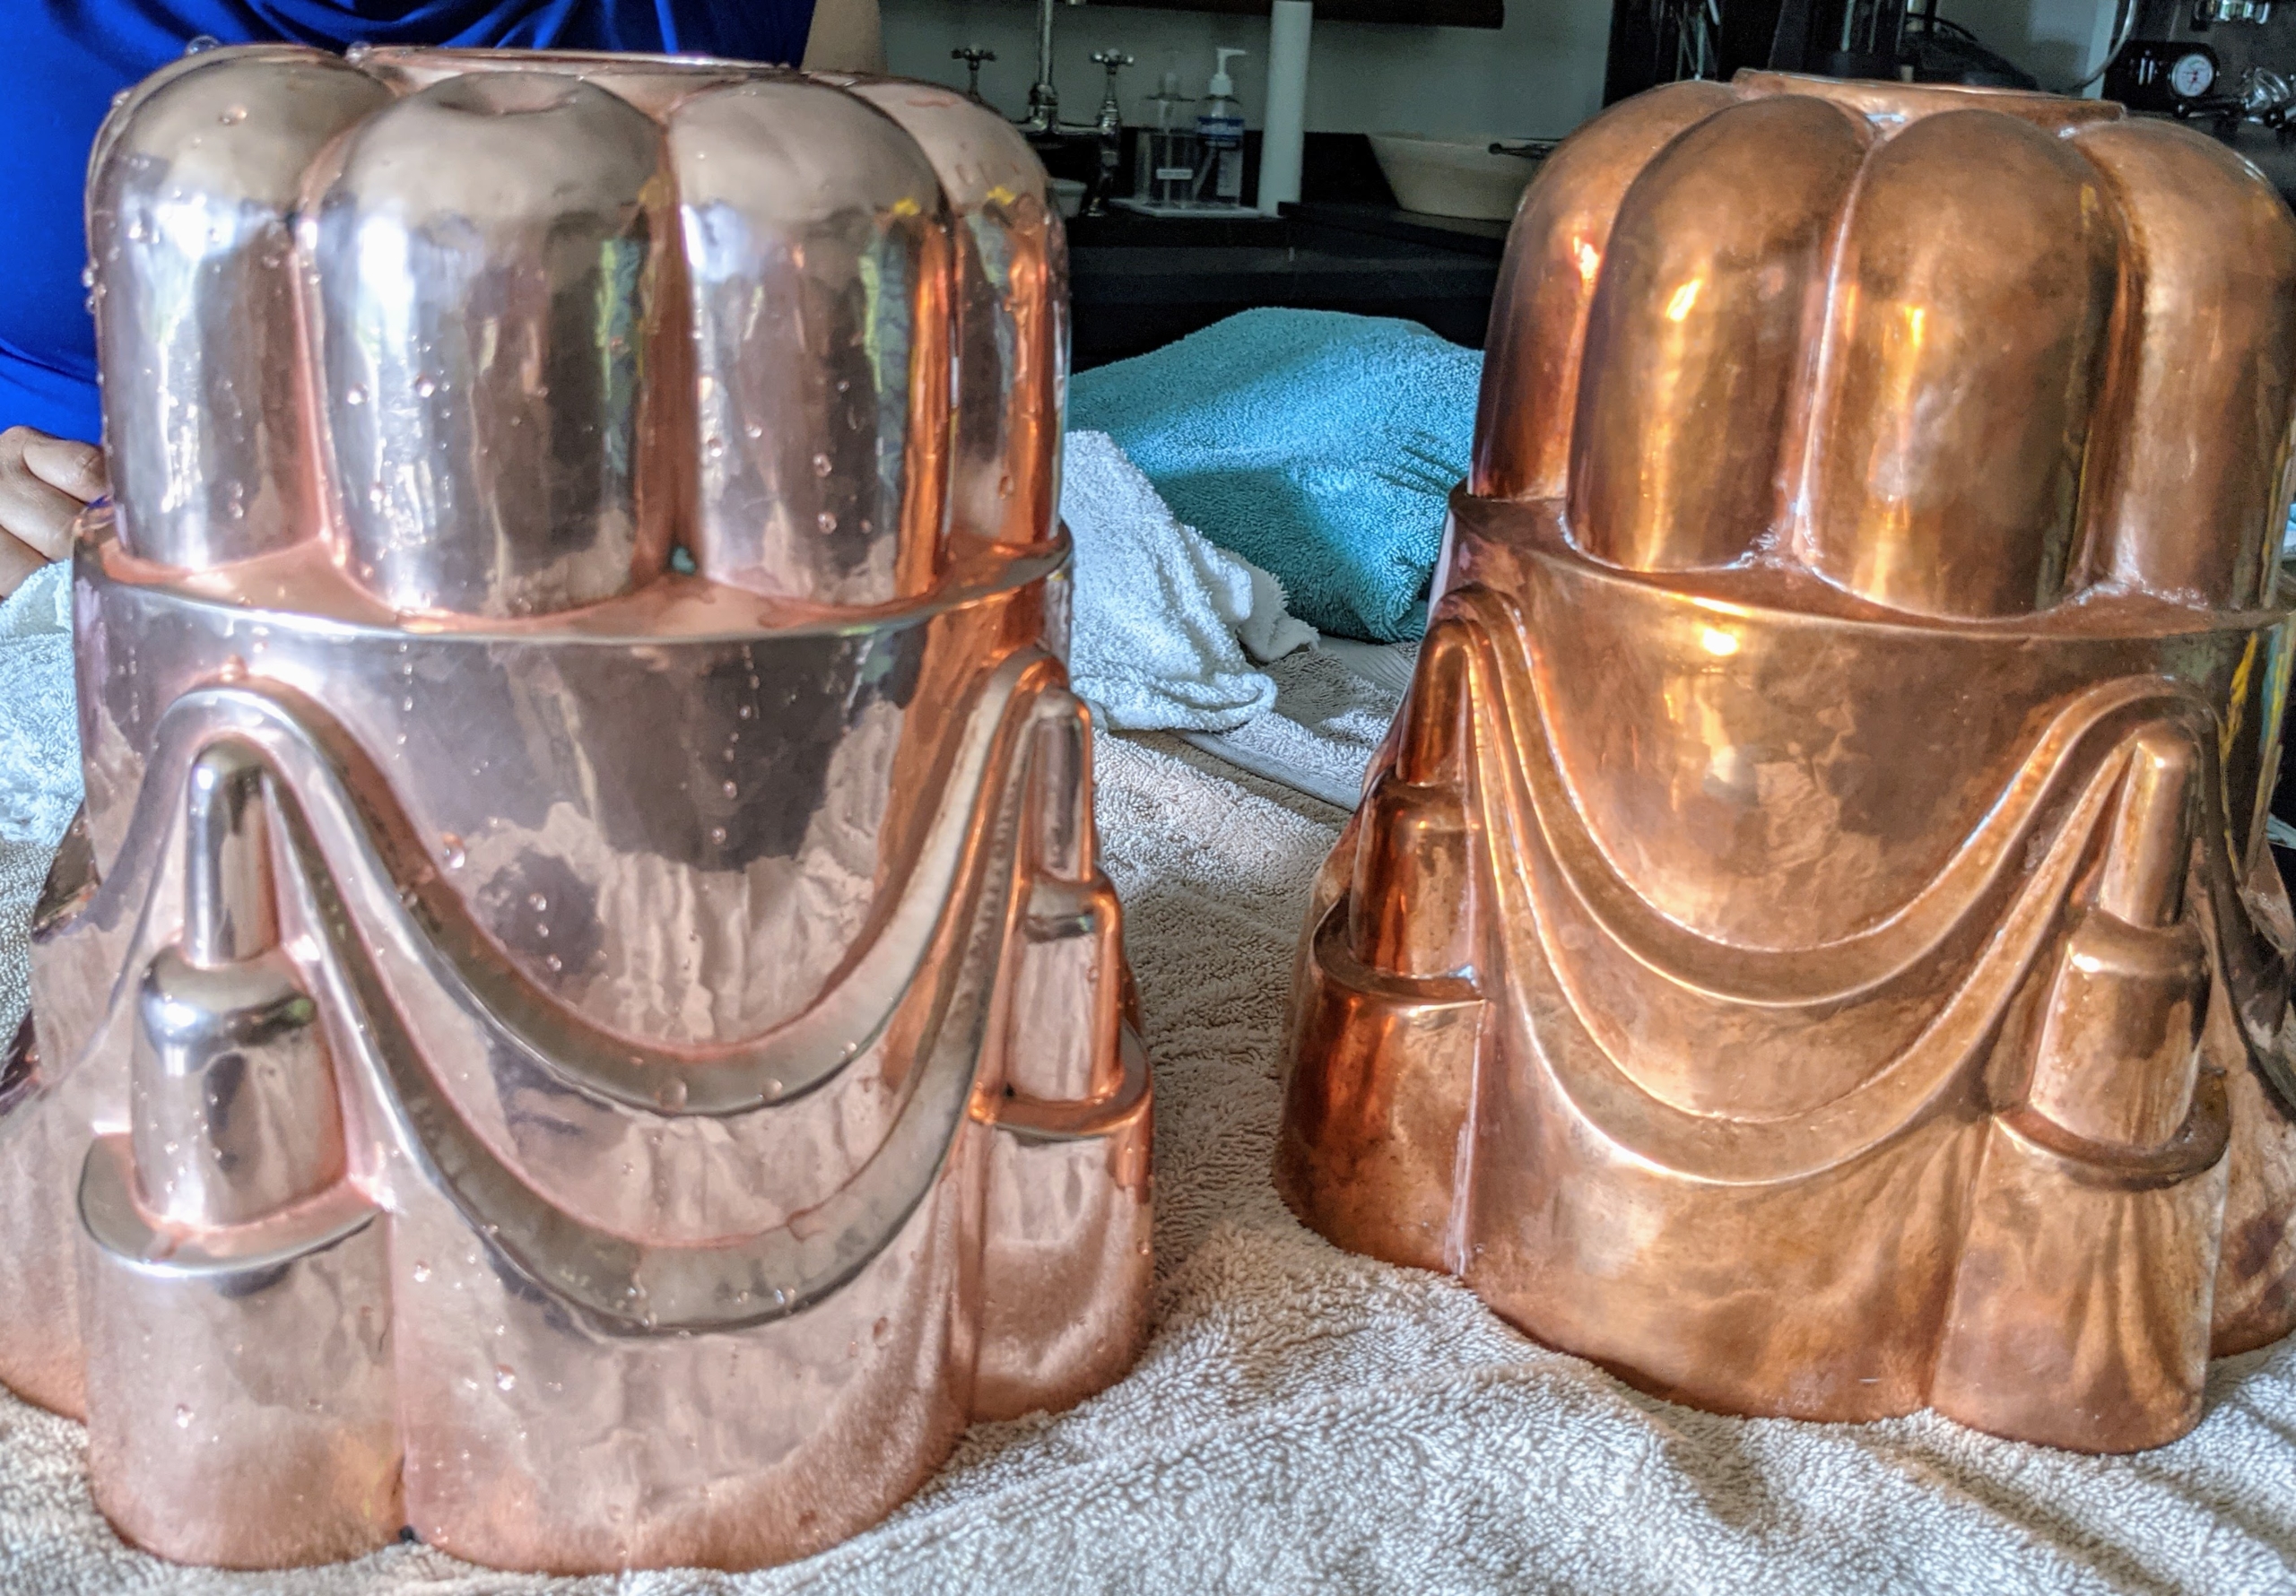 Cleaning Copper in My Studio Kitchen - The Martha Stewart Blog